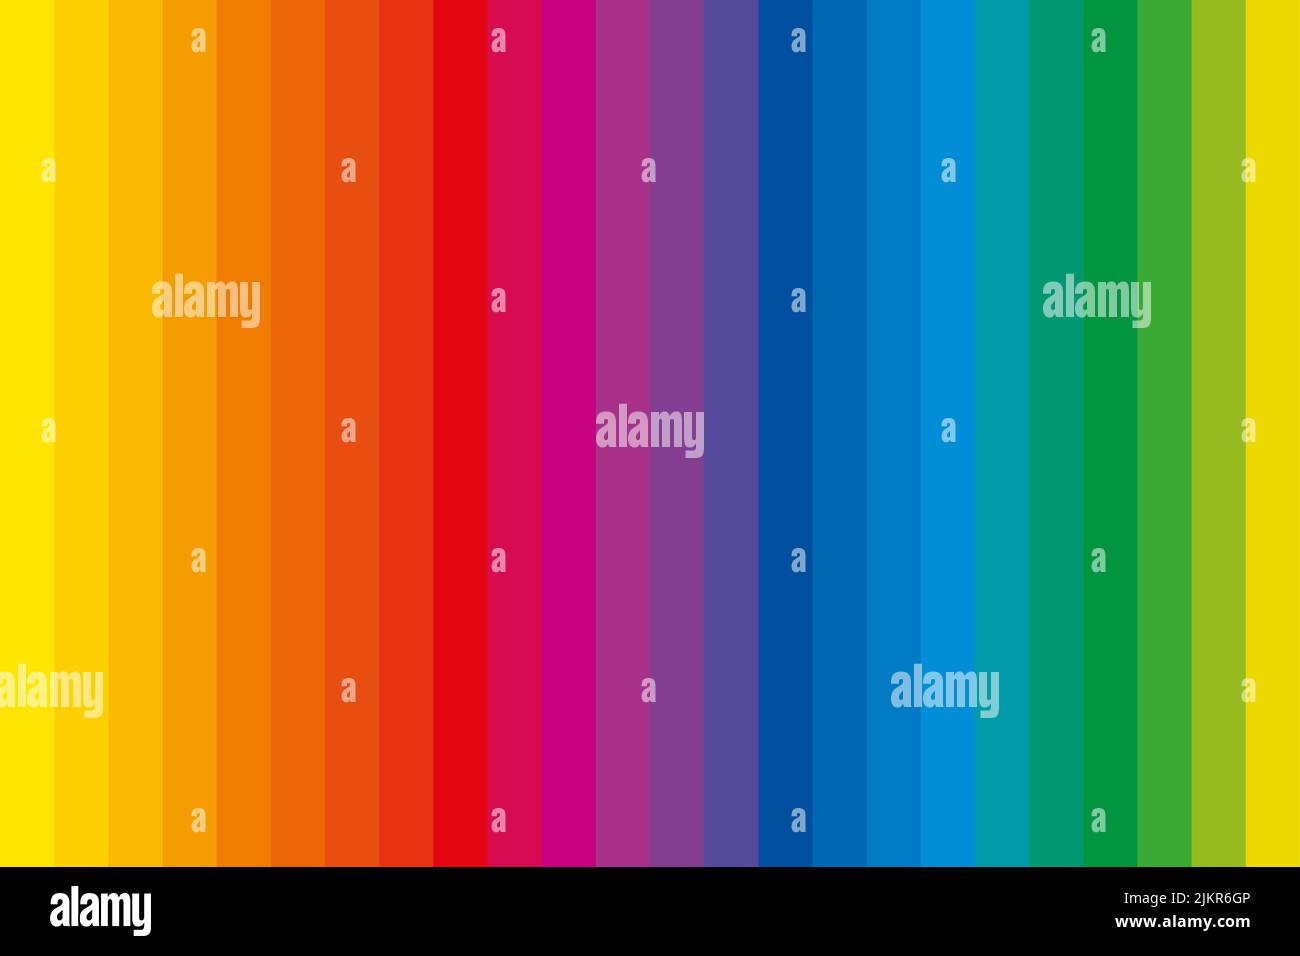 Barre colorate con colori complementari. Spettro di 24 strisce colorate arcobaleno, tonalità di colore uniche in una fila, derivate da una ruota di colore, che è usato nell'arte Foto Stock